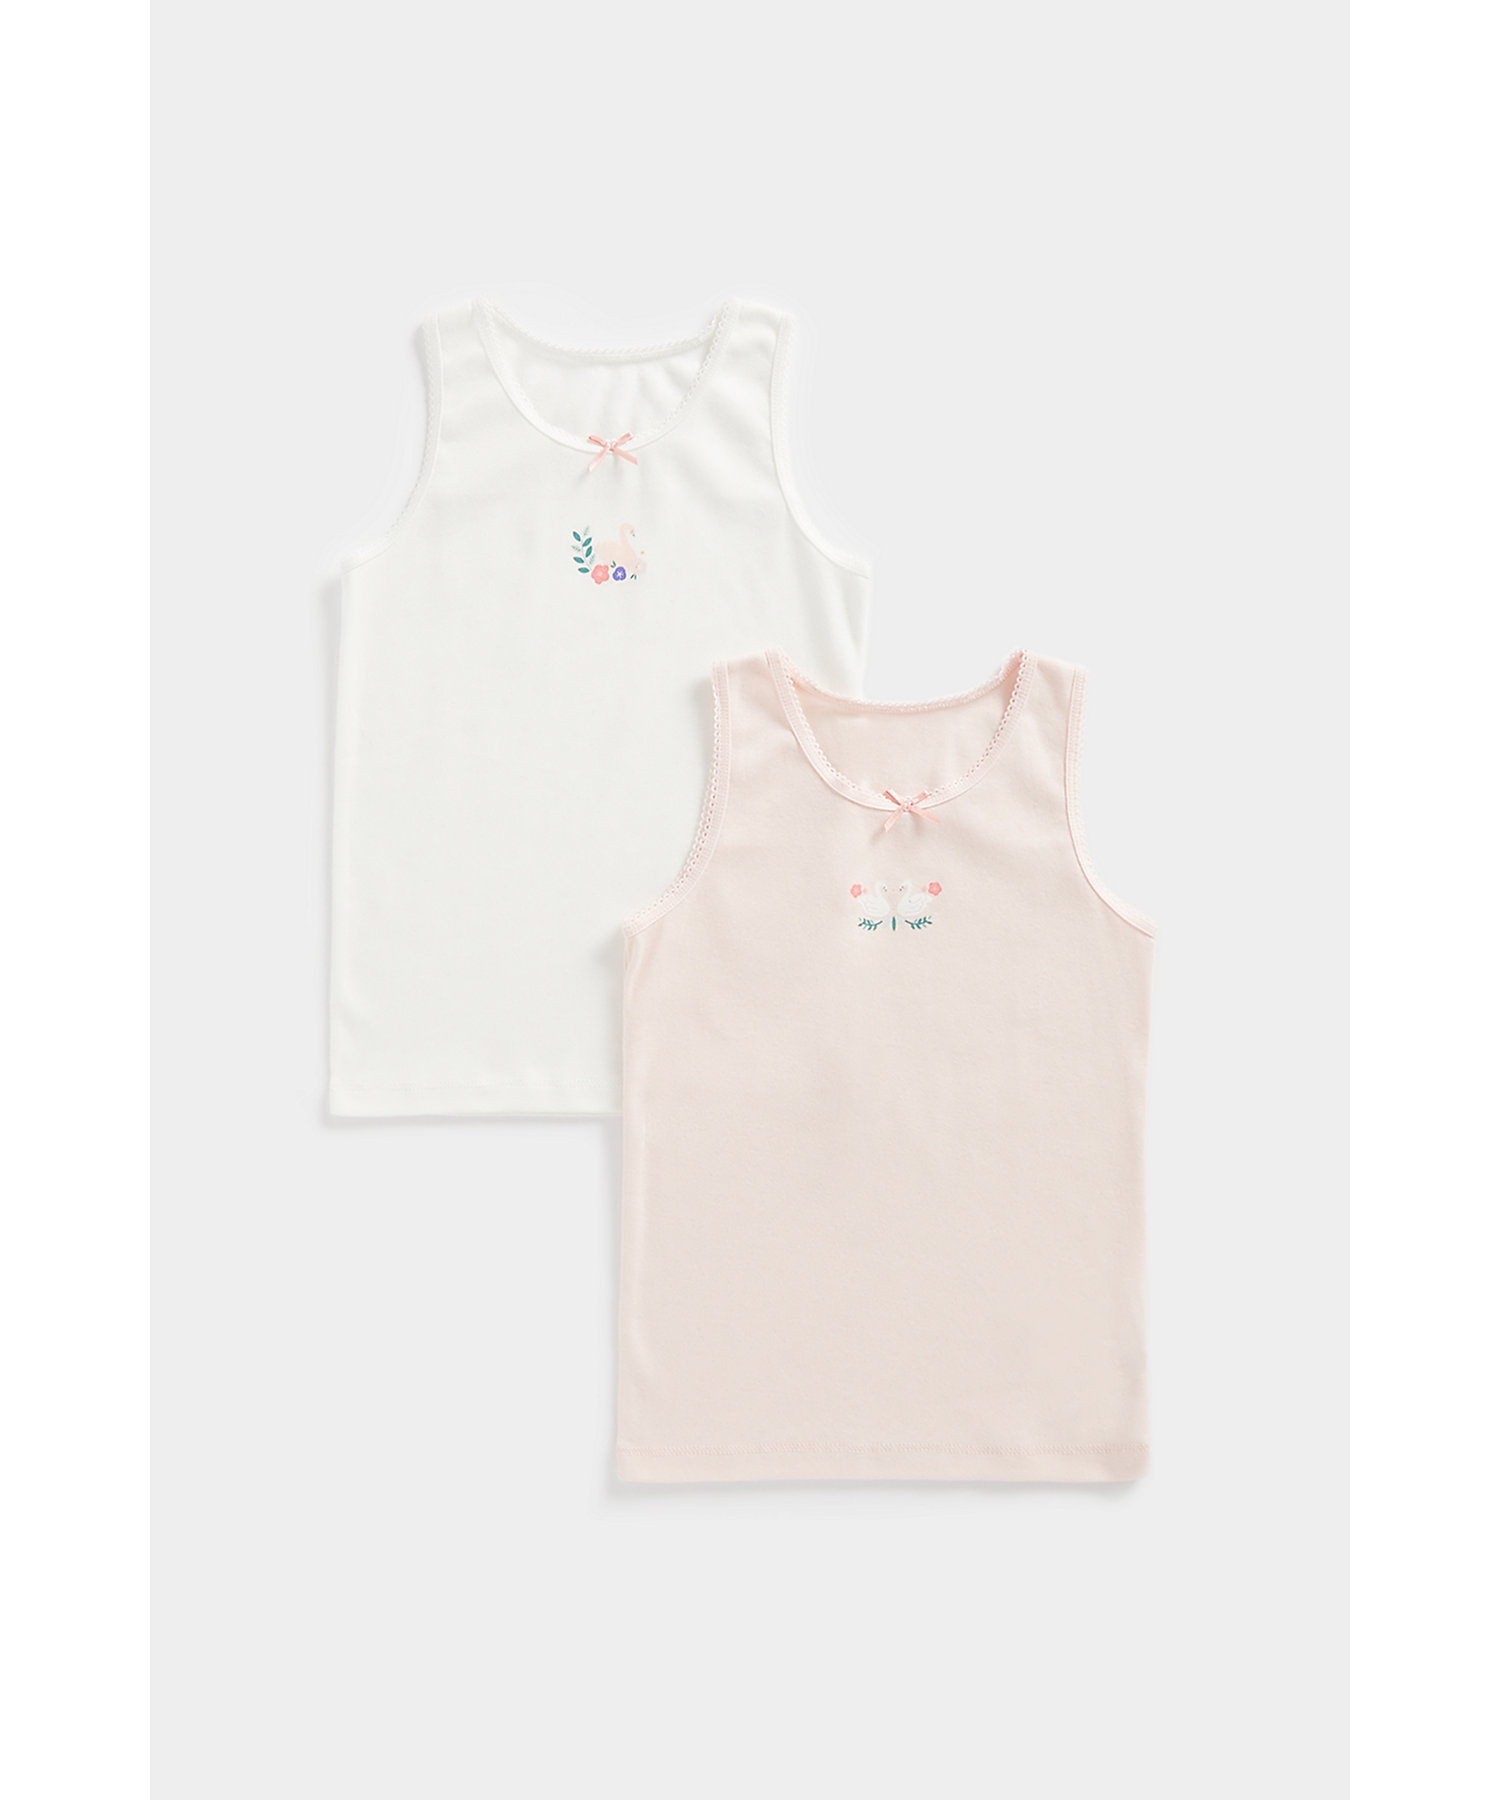 Girls Sleeveless Vest -Pack of 2-Multicolor